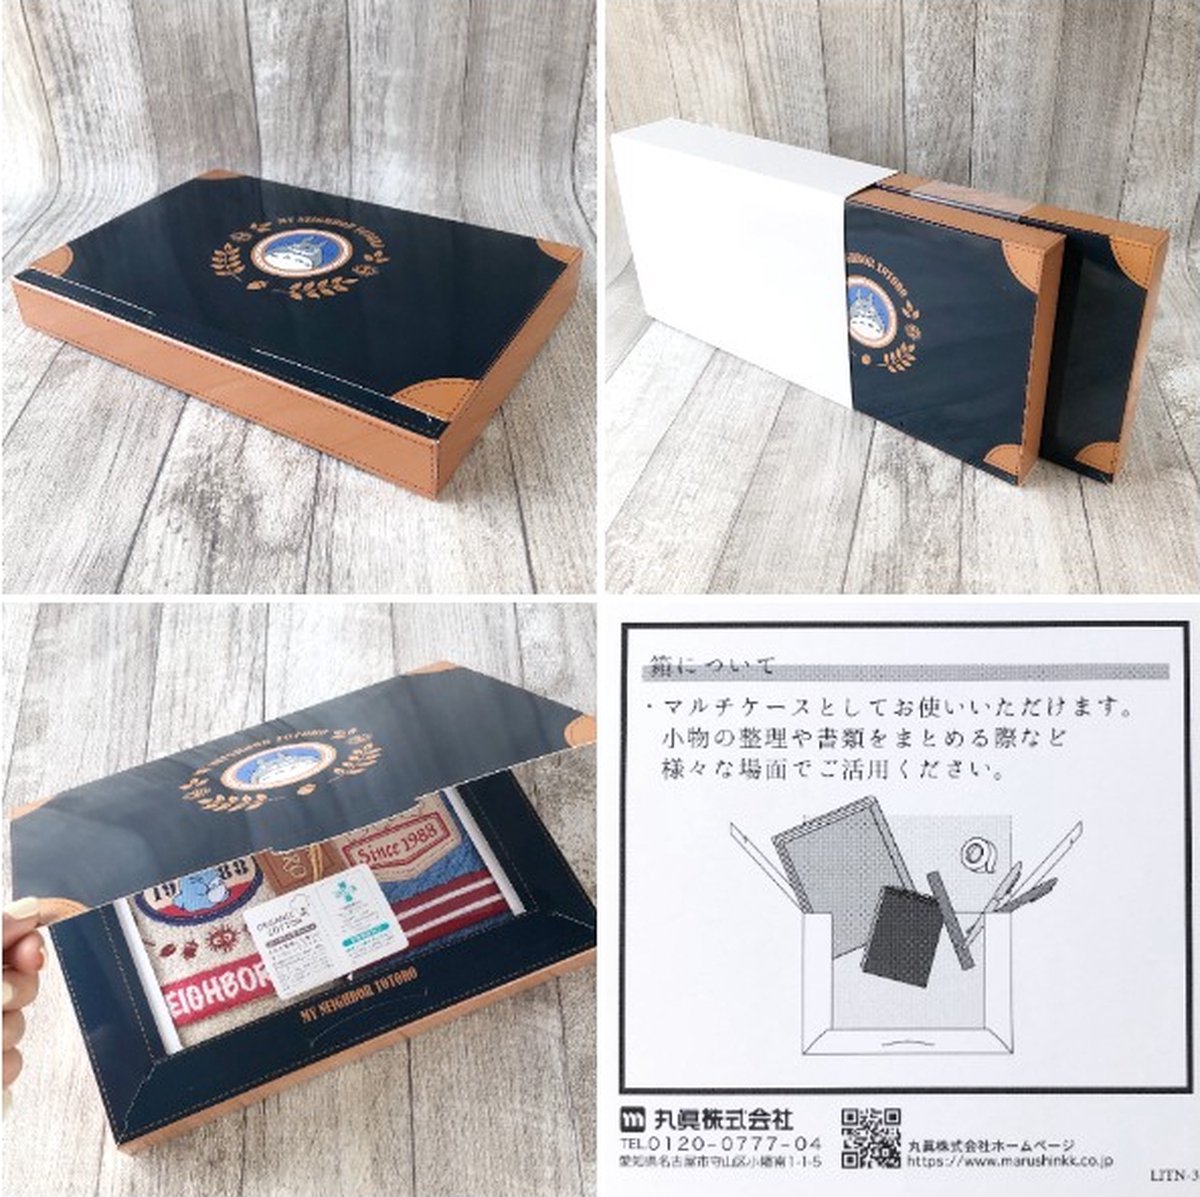 Ghibli - My Neighbor Totoro - 3 Denim Stitching Towels Gift Box